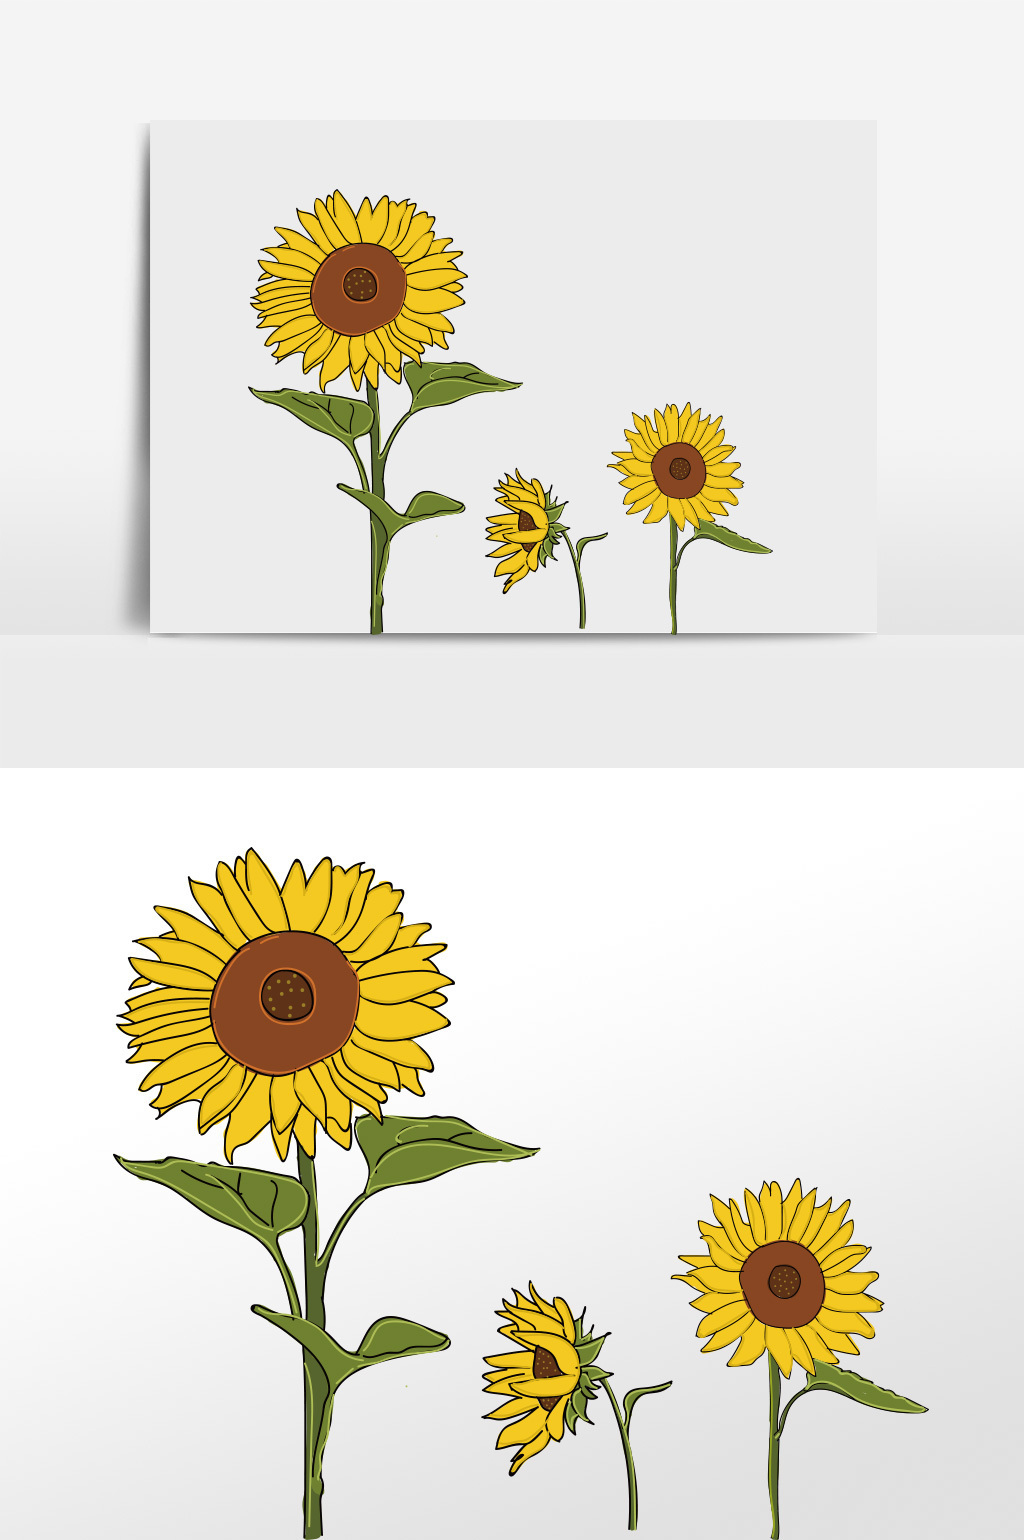 字体仅供参考 包图网提供精美好看的可爱卡通夏天太阳花元素素材免费